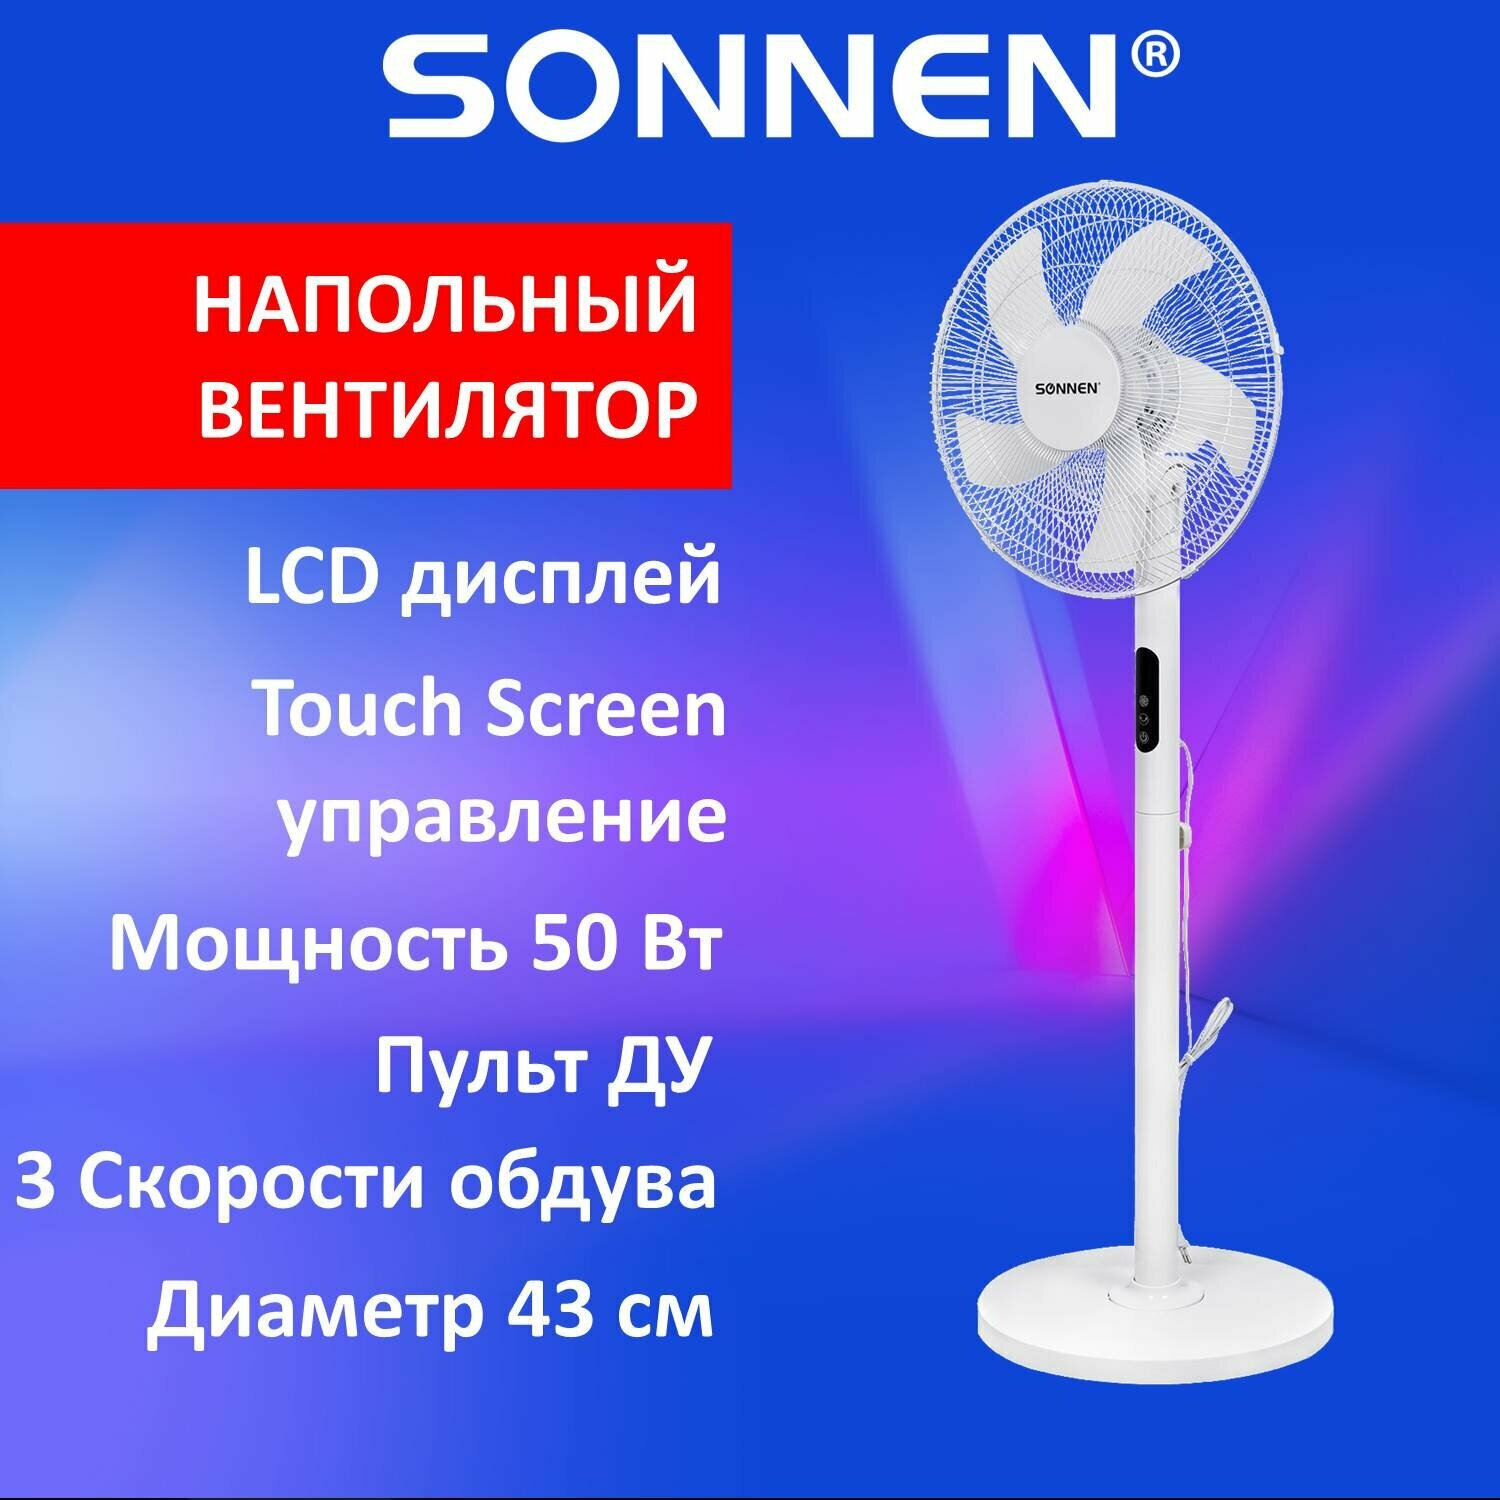 Вентилятор напольный LCD дисплей, пульт ДУ SONNEN FS40-A999, 50 Вт, 3 режима, белый, 455735 - фотография № 1